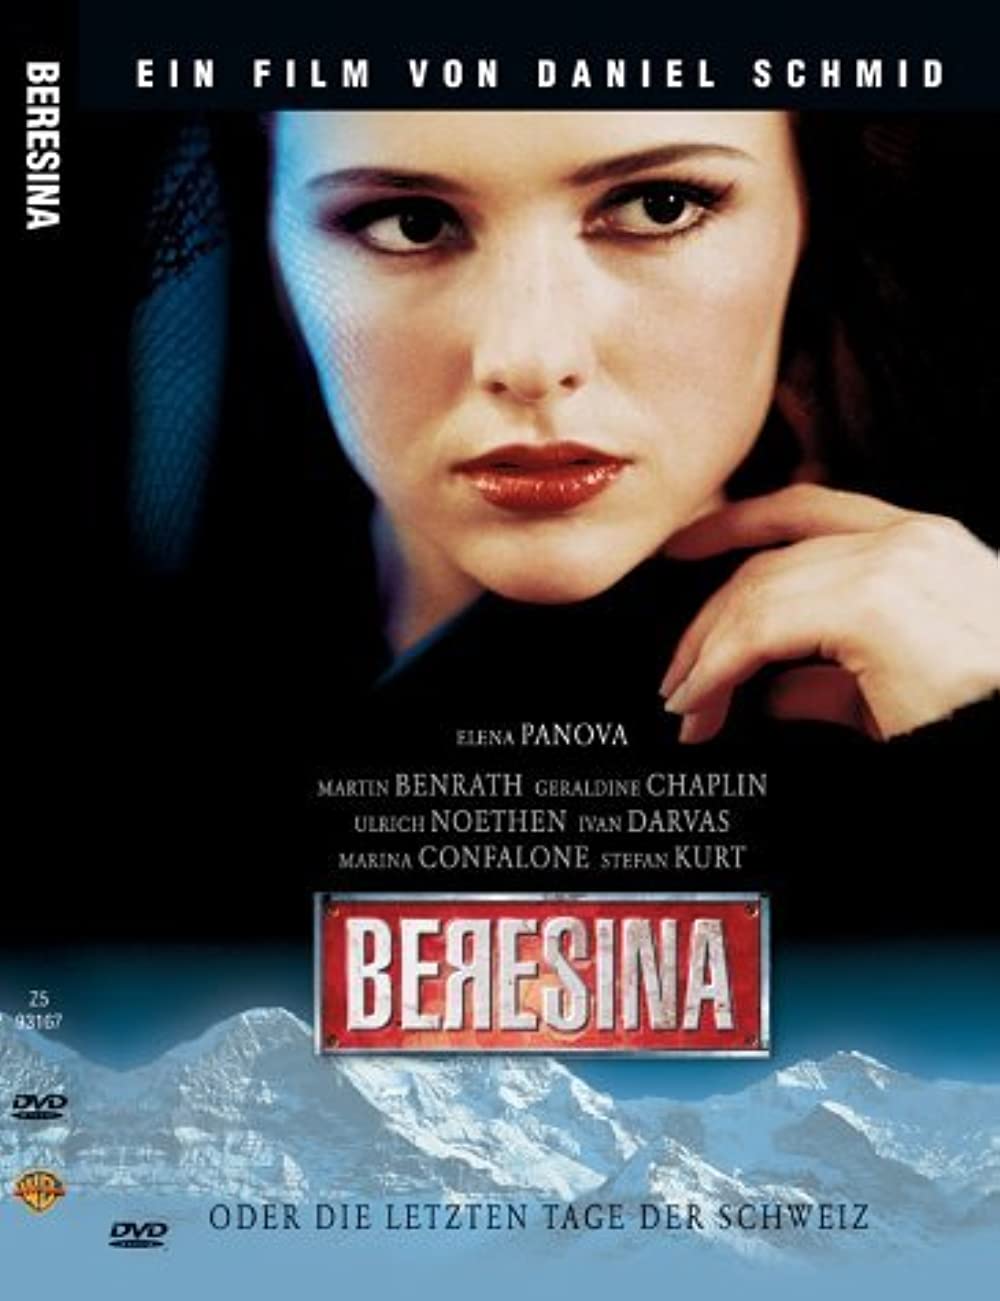 Beresina - oder die letzten Tage der Schweiz